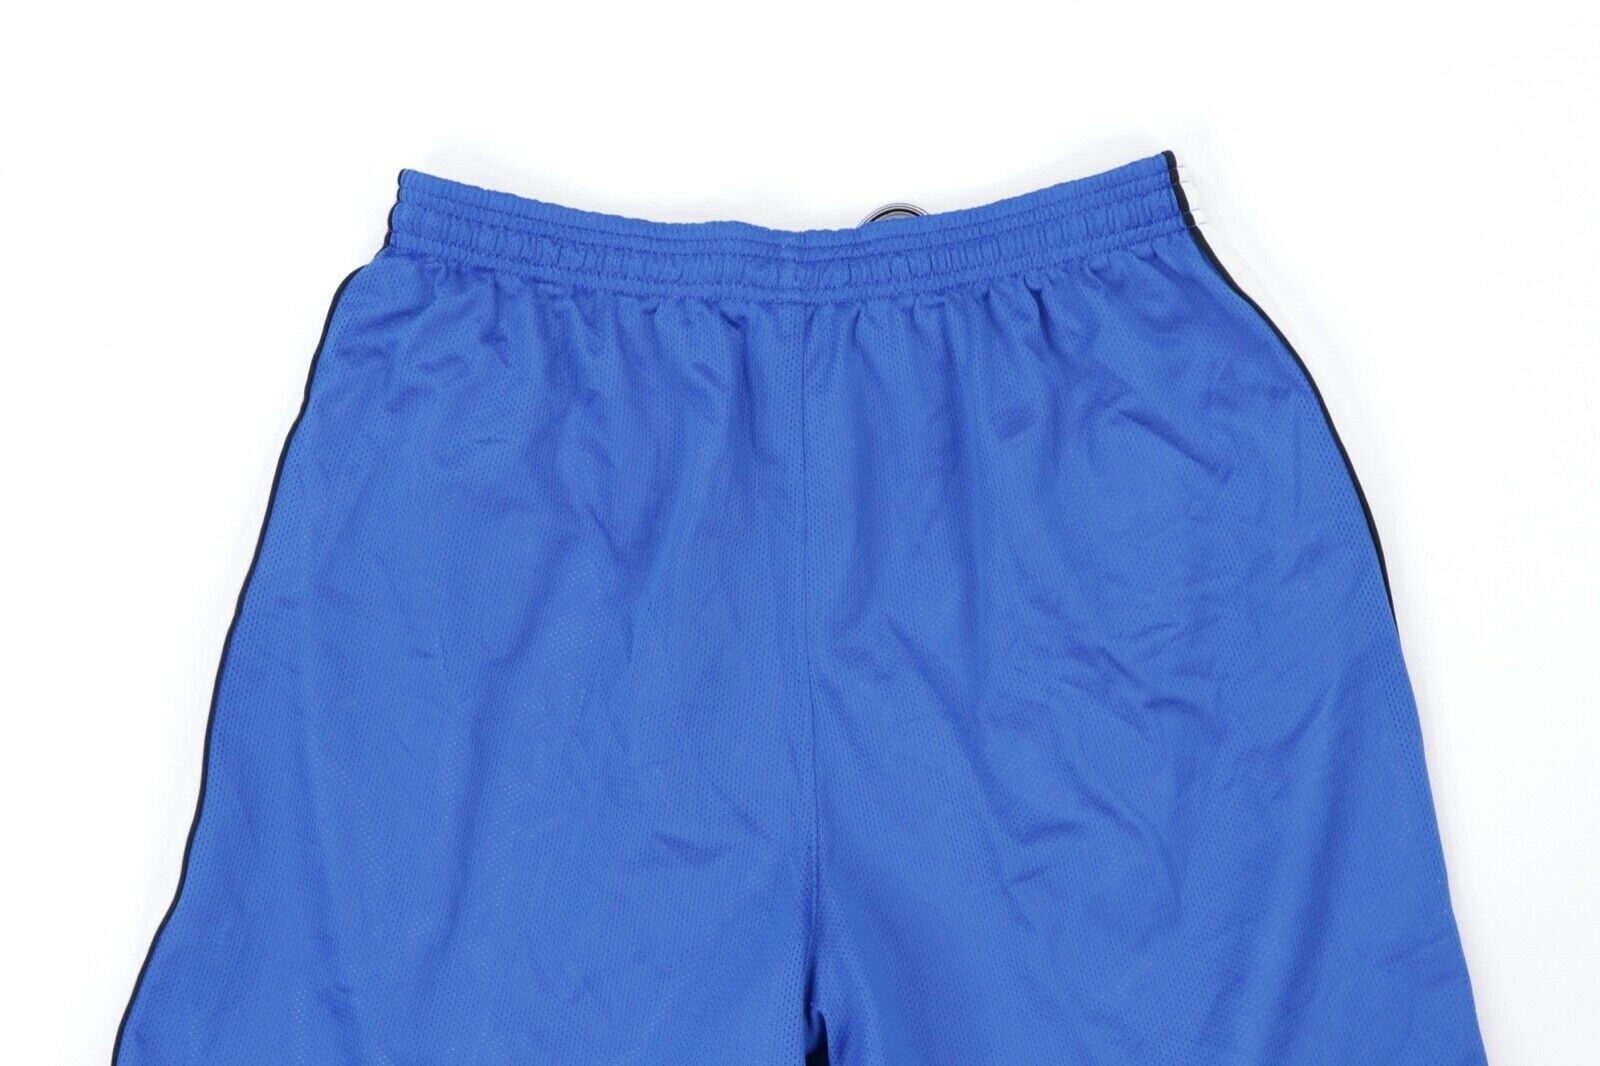 Nike Vintage Nike Total 90 Reversible Soccer Shorts Blue White M Size US 30 / EU 46 - 3 Thumbnail